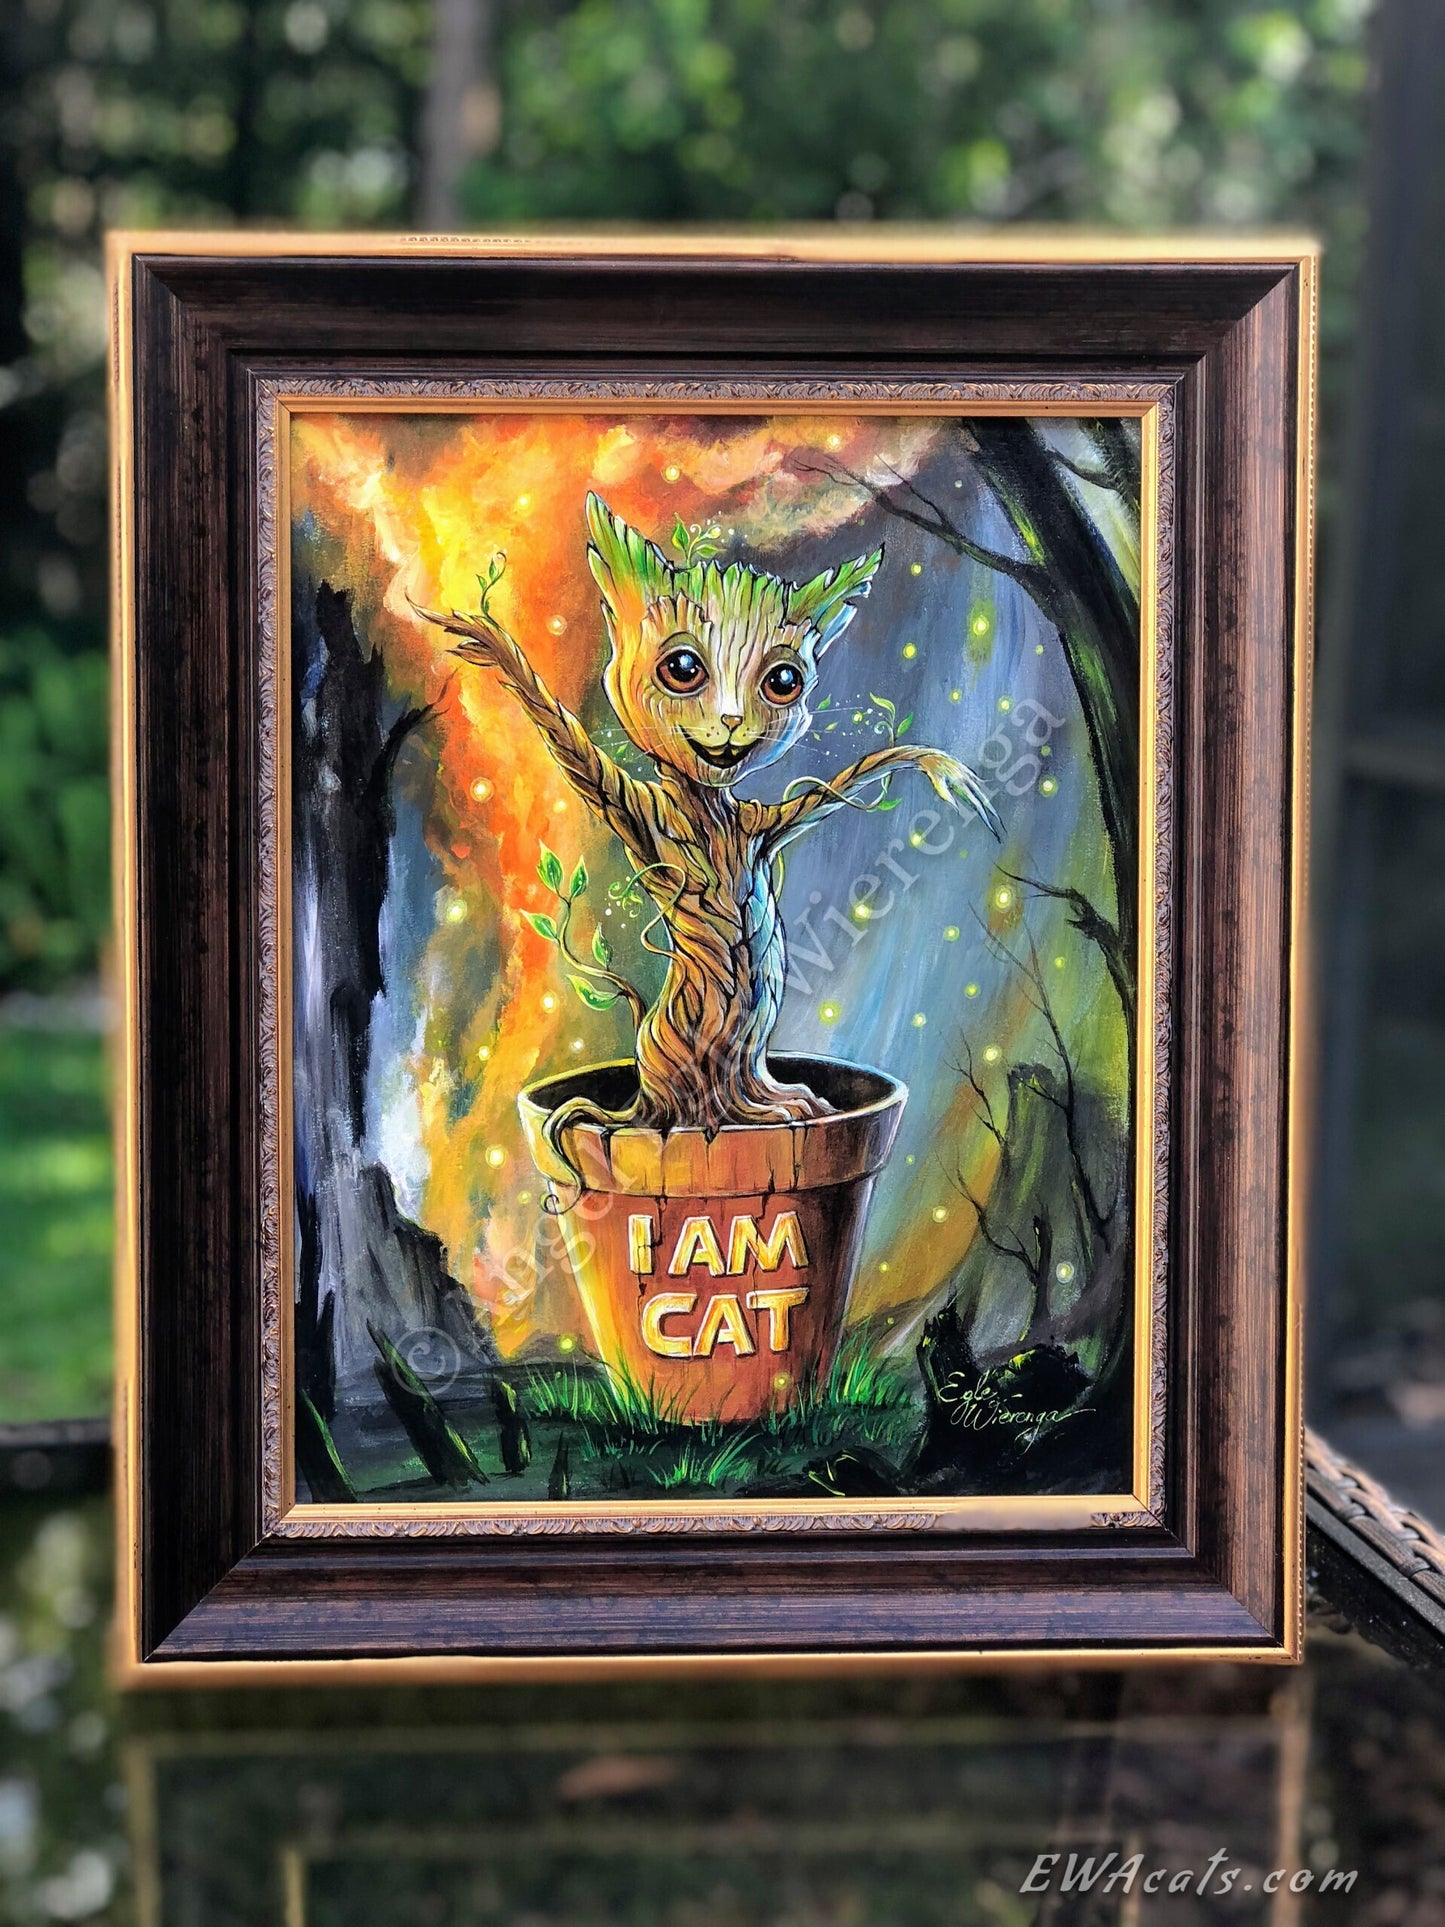 Original Painting "I AM CAT"